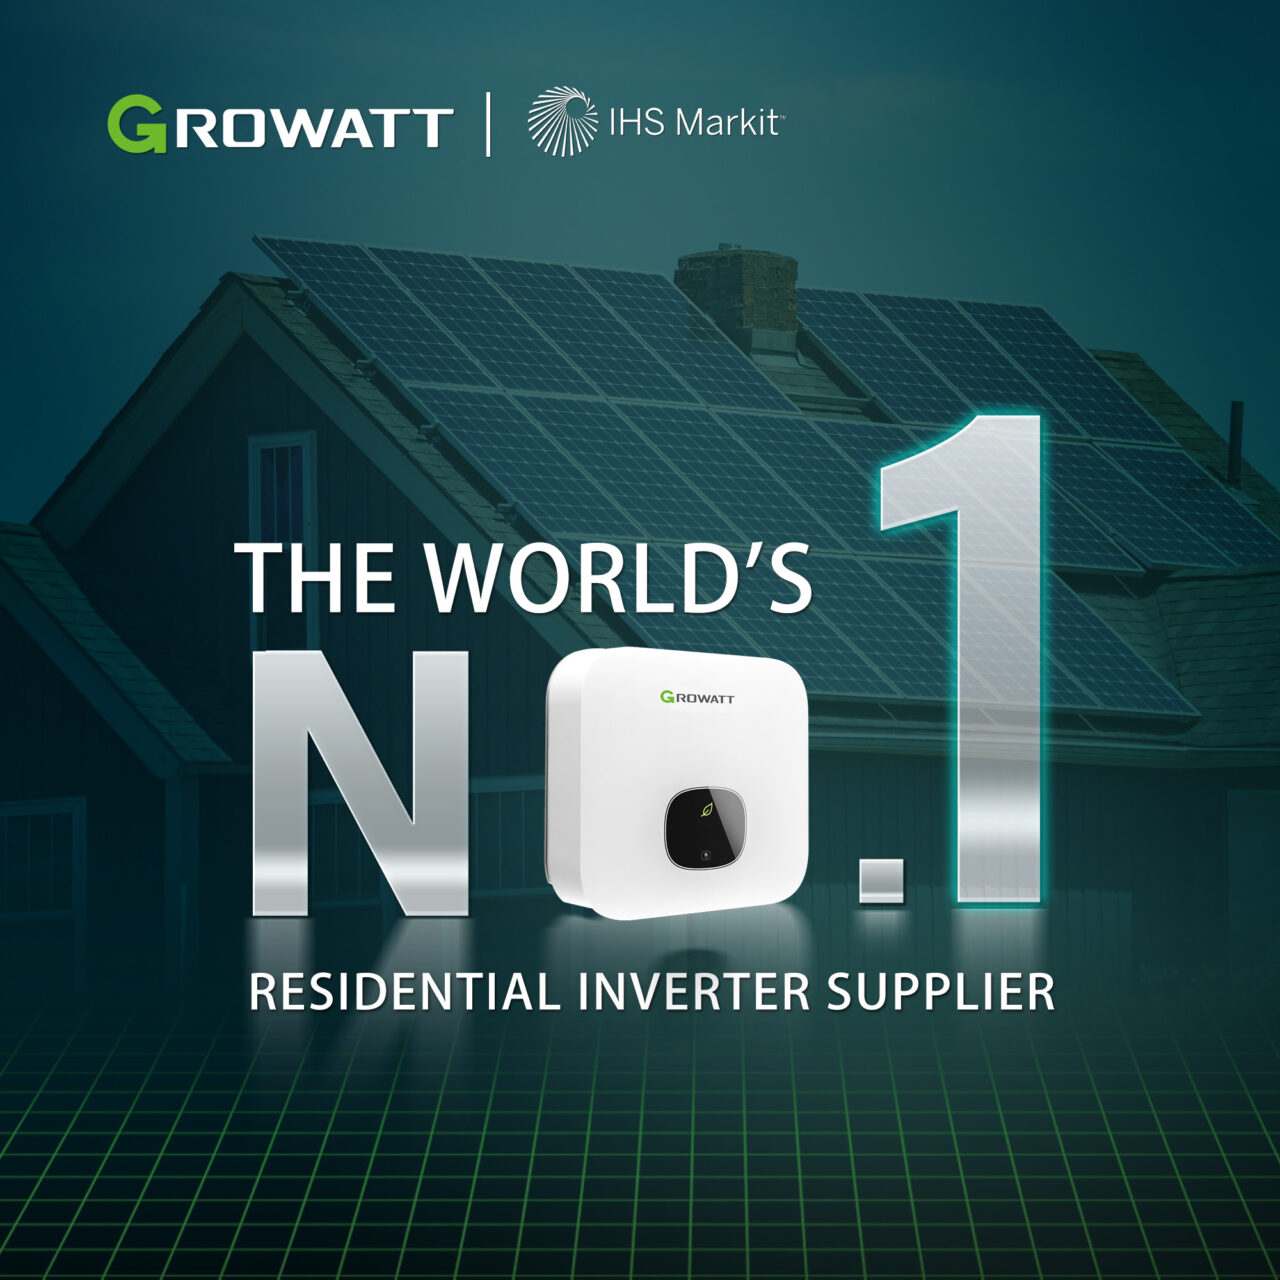 Growatt No.1 Residential Inverter Supplier